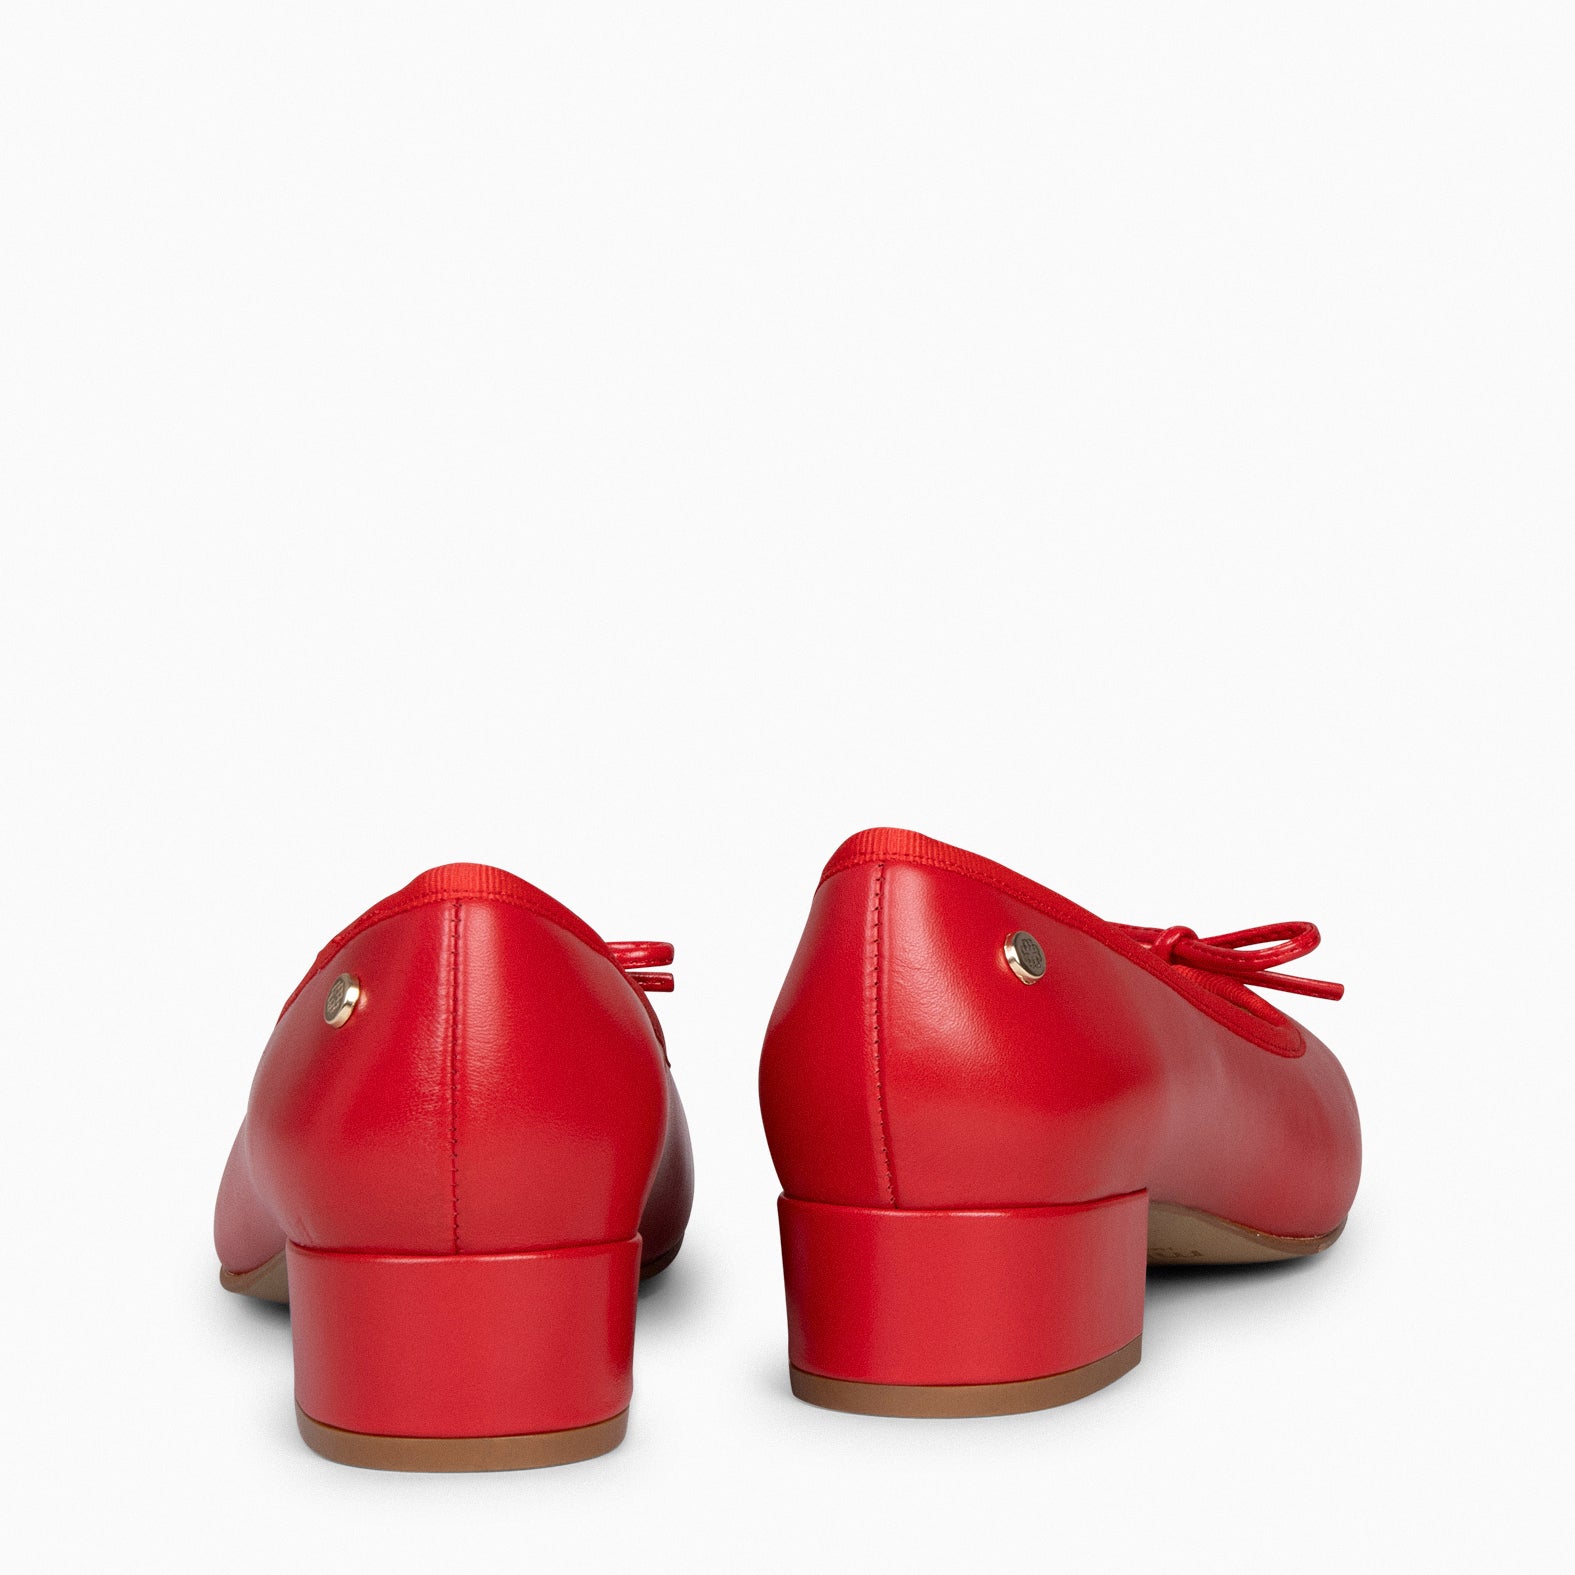 OPERA – RED ballerina with heel